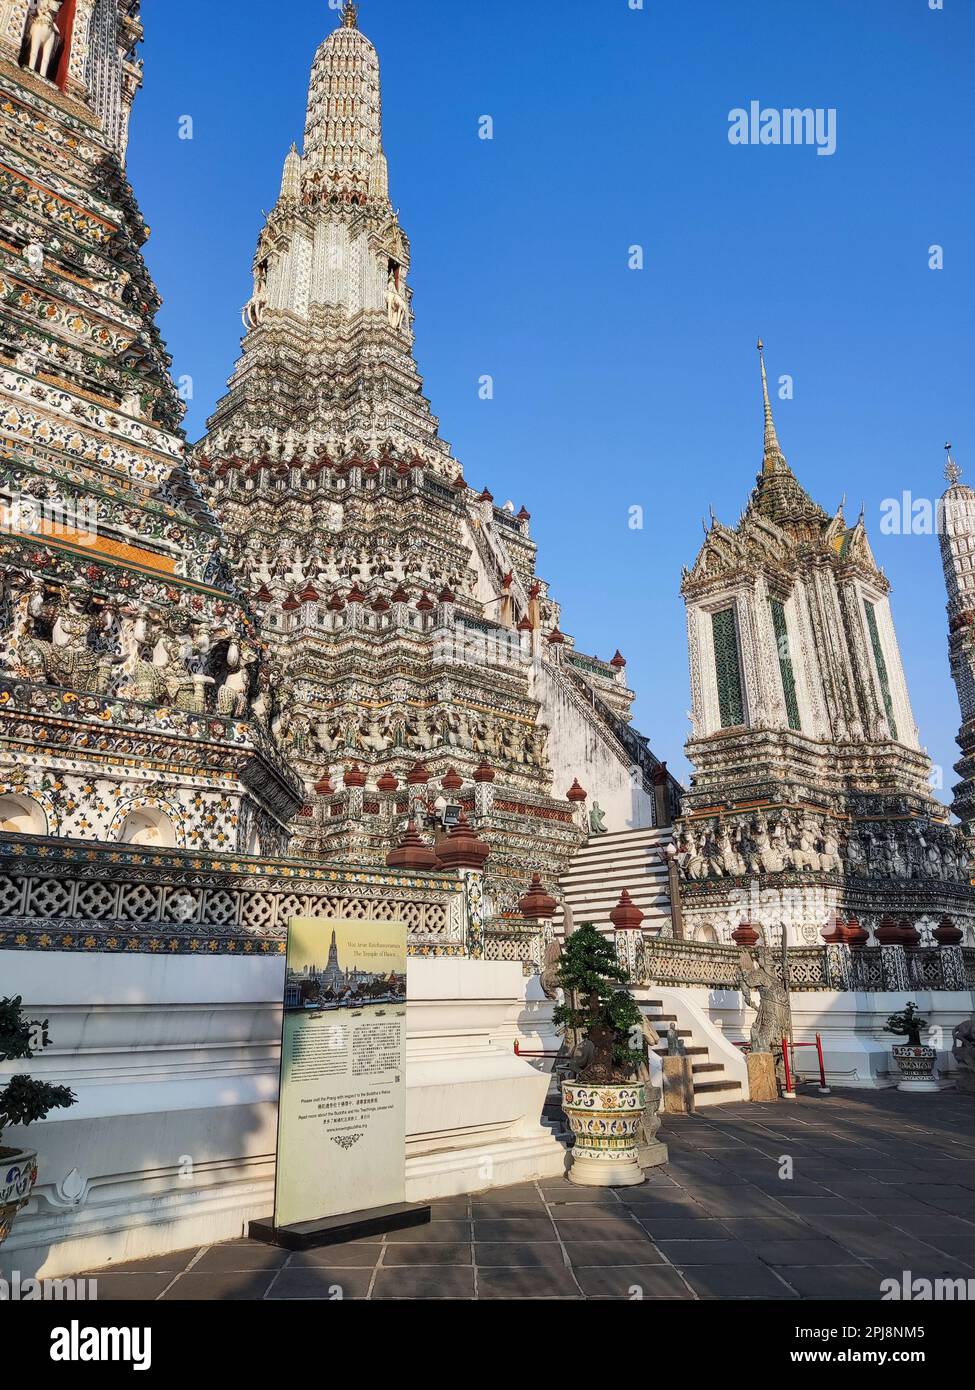 Beeindruckende architektonische Details des Wat Arun (Tempel der Morgenröte) in Bangkok. Dieses Wahrzeichen von Wat Arun ist ein 70 Meter hoher Tempelturm, ein Stupa-ähnliches Stockfoto